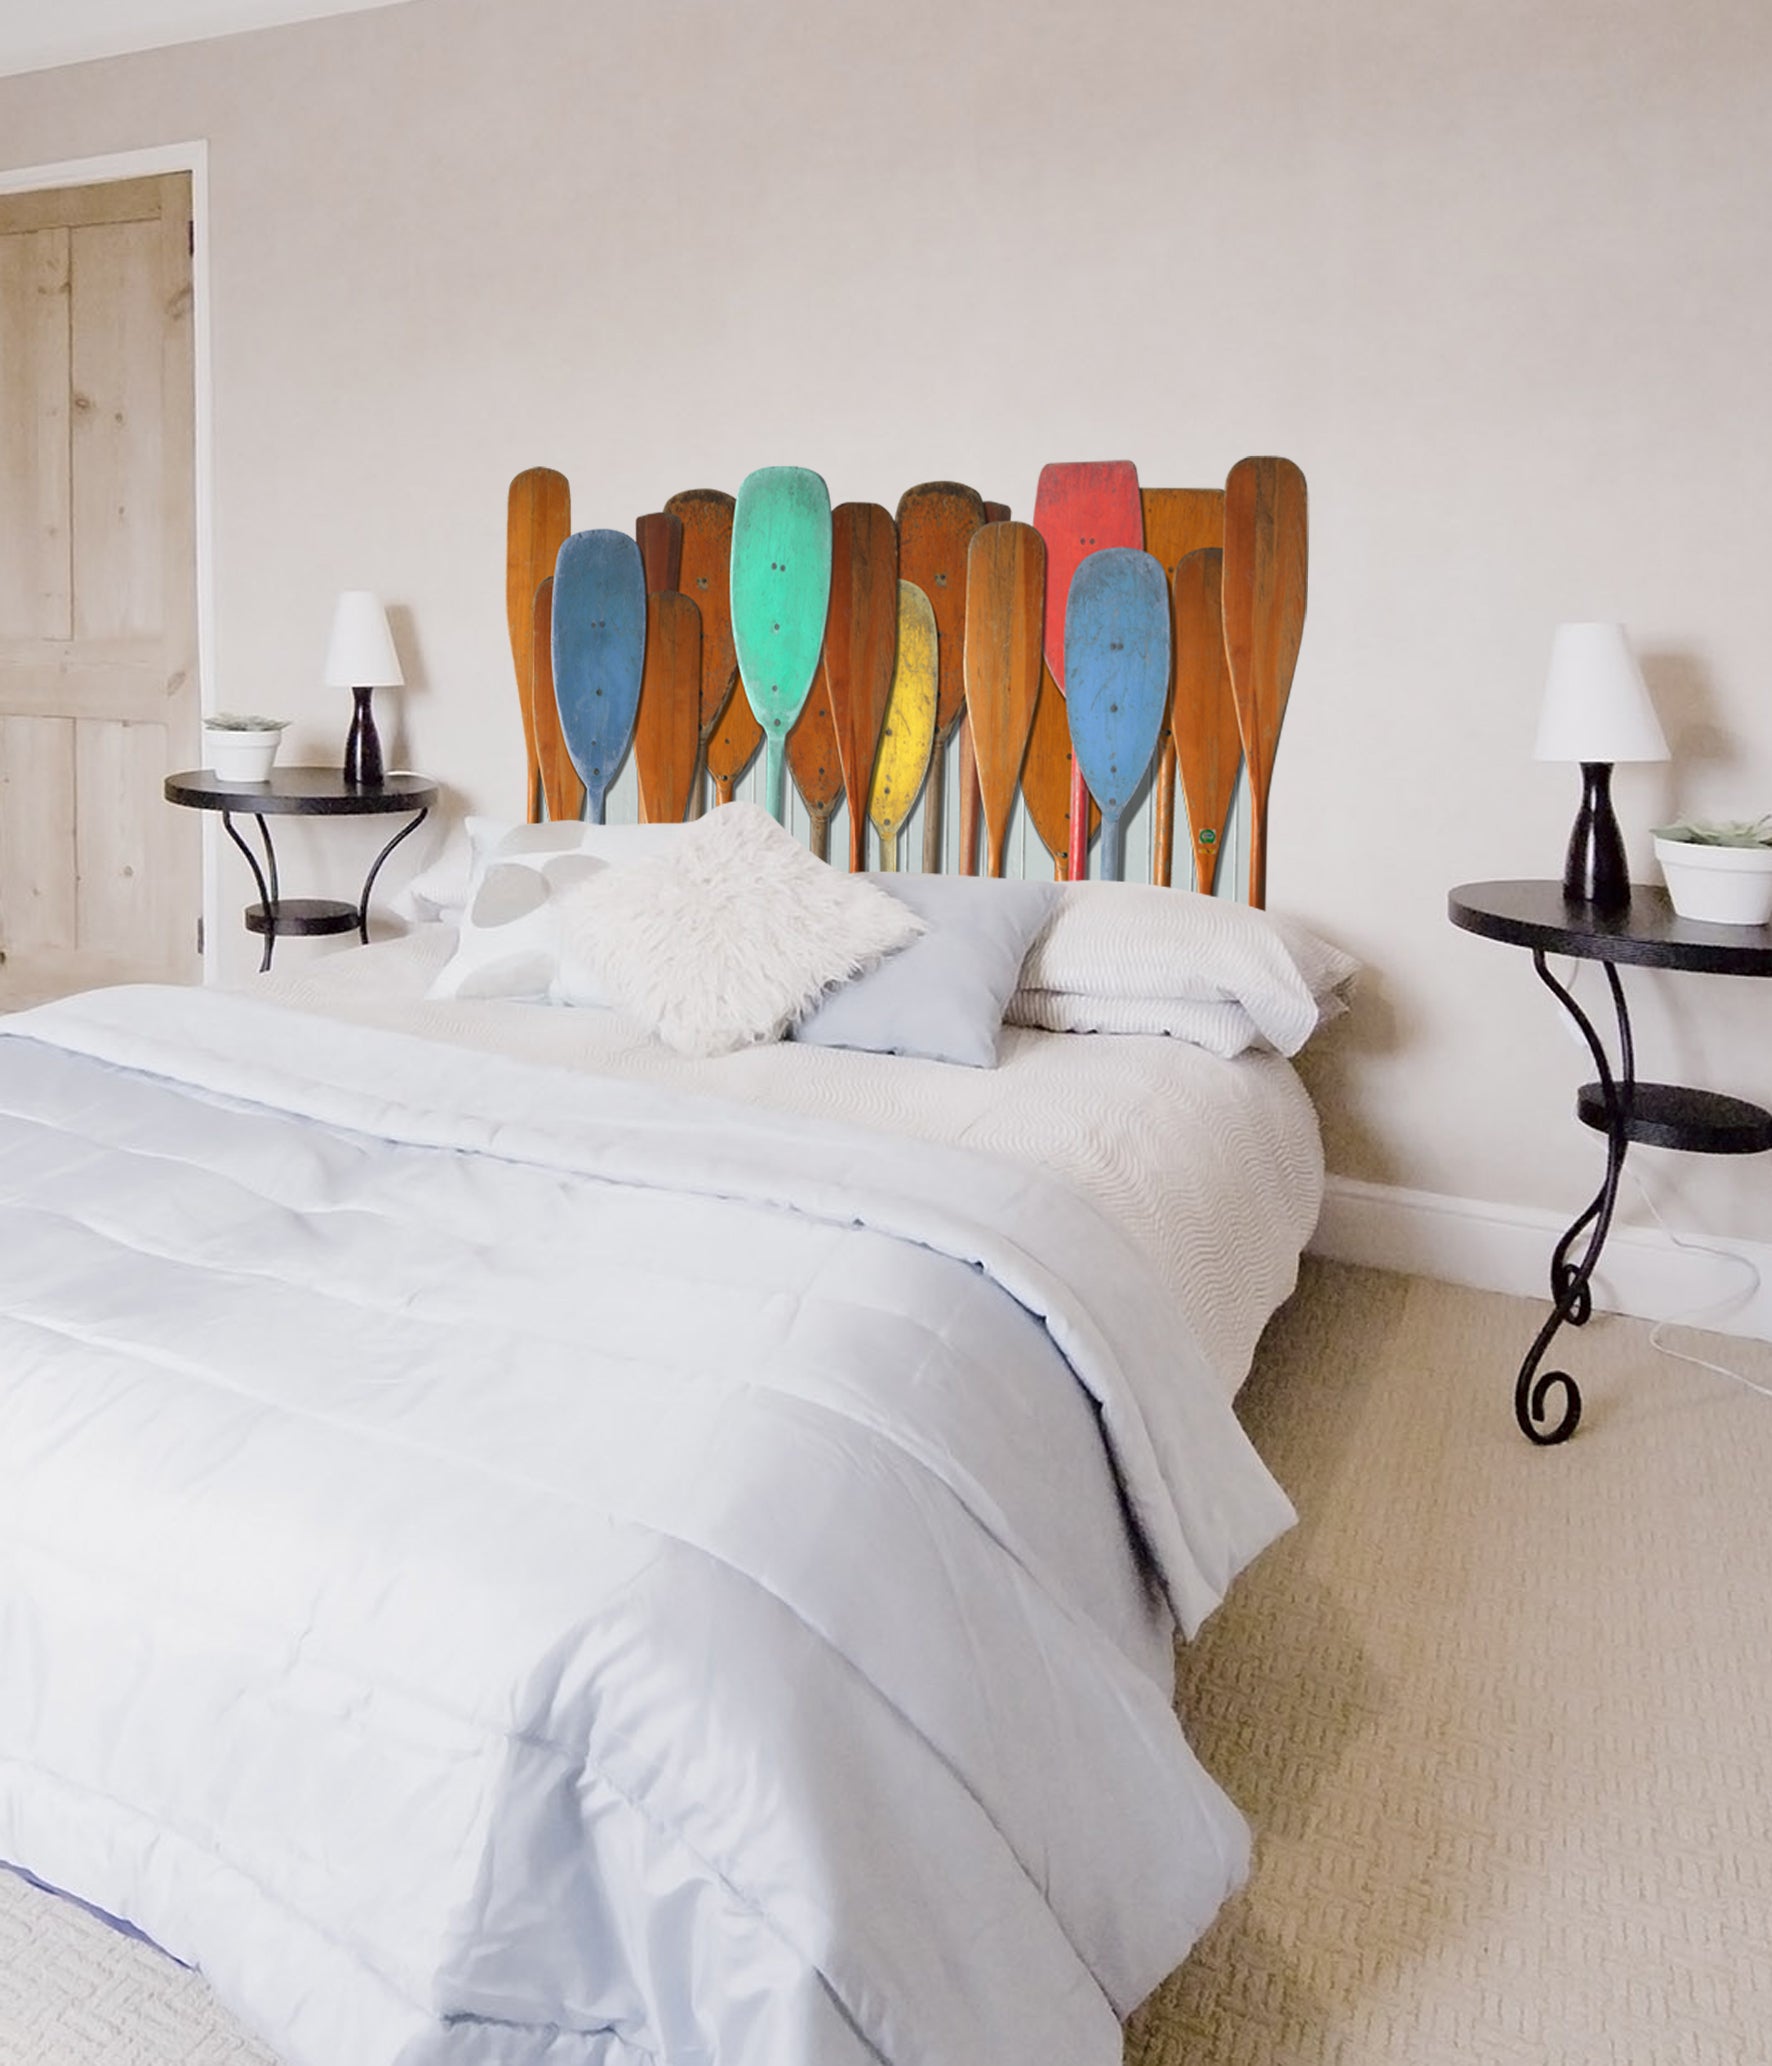 Sticker décoratif pour tête de lit, trompe l'oeil tête de lit vintage,  photo de rames en bois multicolores, 60 cm X 160 cm